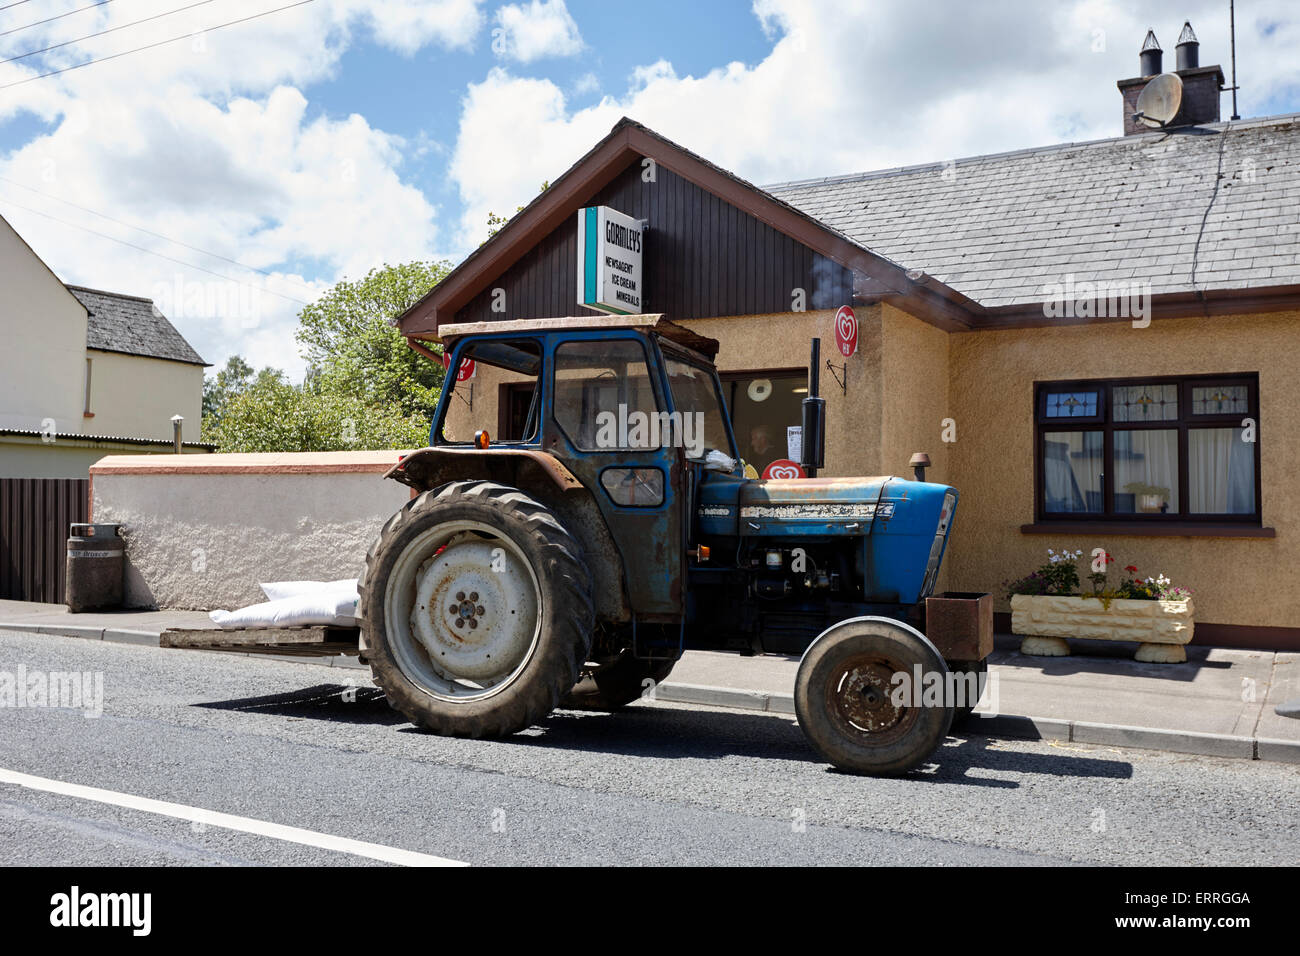 Alter Traktor geparkt vor einem lokalen Geschäft in einem kleinen Dorf im ländlichen Irland Emyvale monaghan Stockfoto